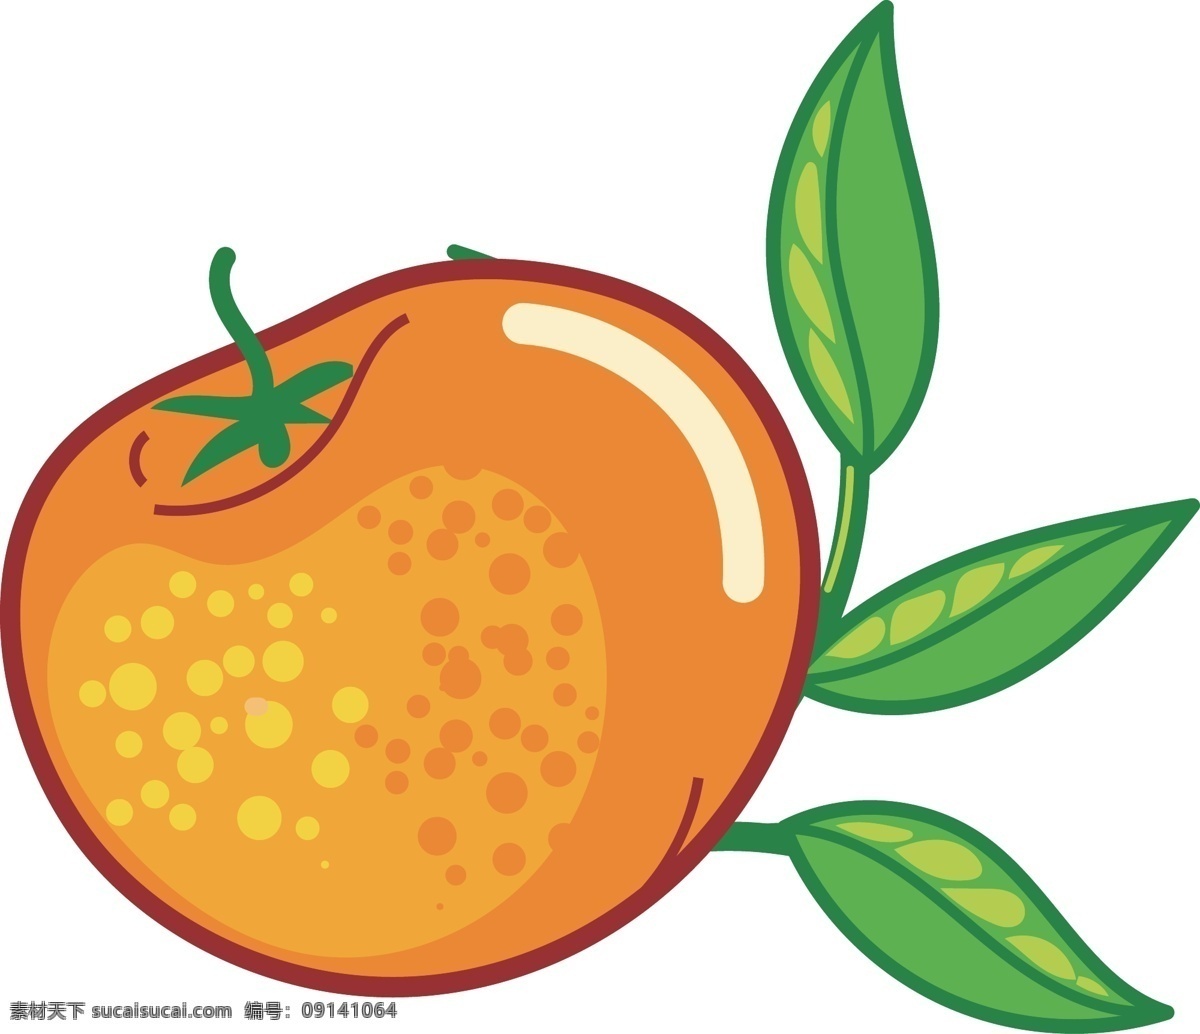 卡通 橘子 造型 元素 卡通橘子瓣 卡通橘子 橘子造型 橘子图案 水果图案 水果装饰 橘子瓣 水果 水果橘子